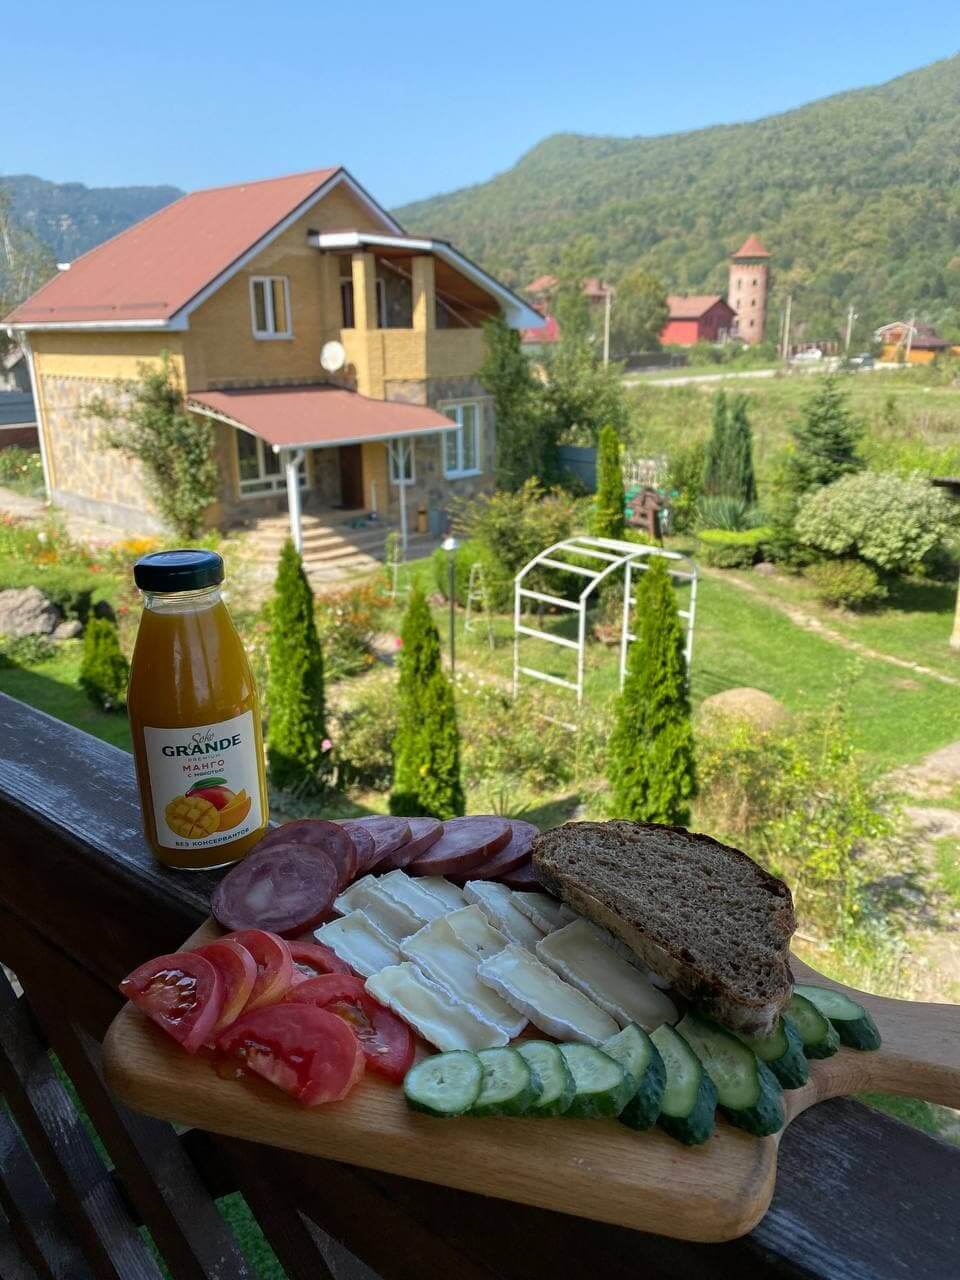 Завтрак на балконе, нарезка и сок.